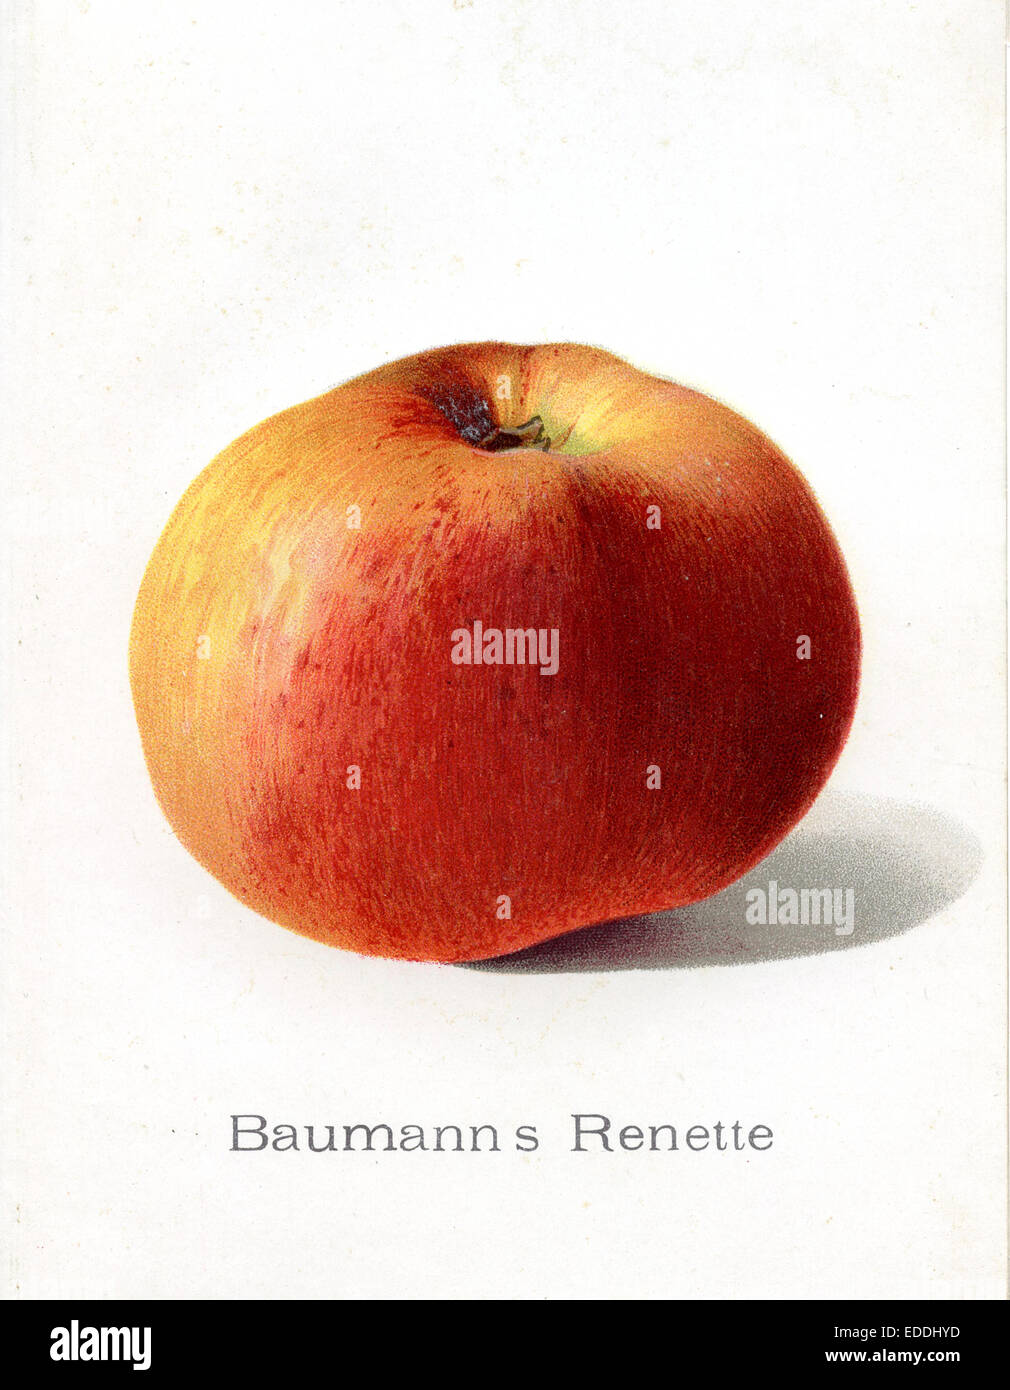 apple, apple variety: Baumann rennet, Reinette Stock Photo